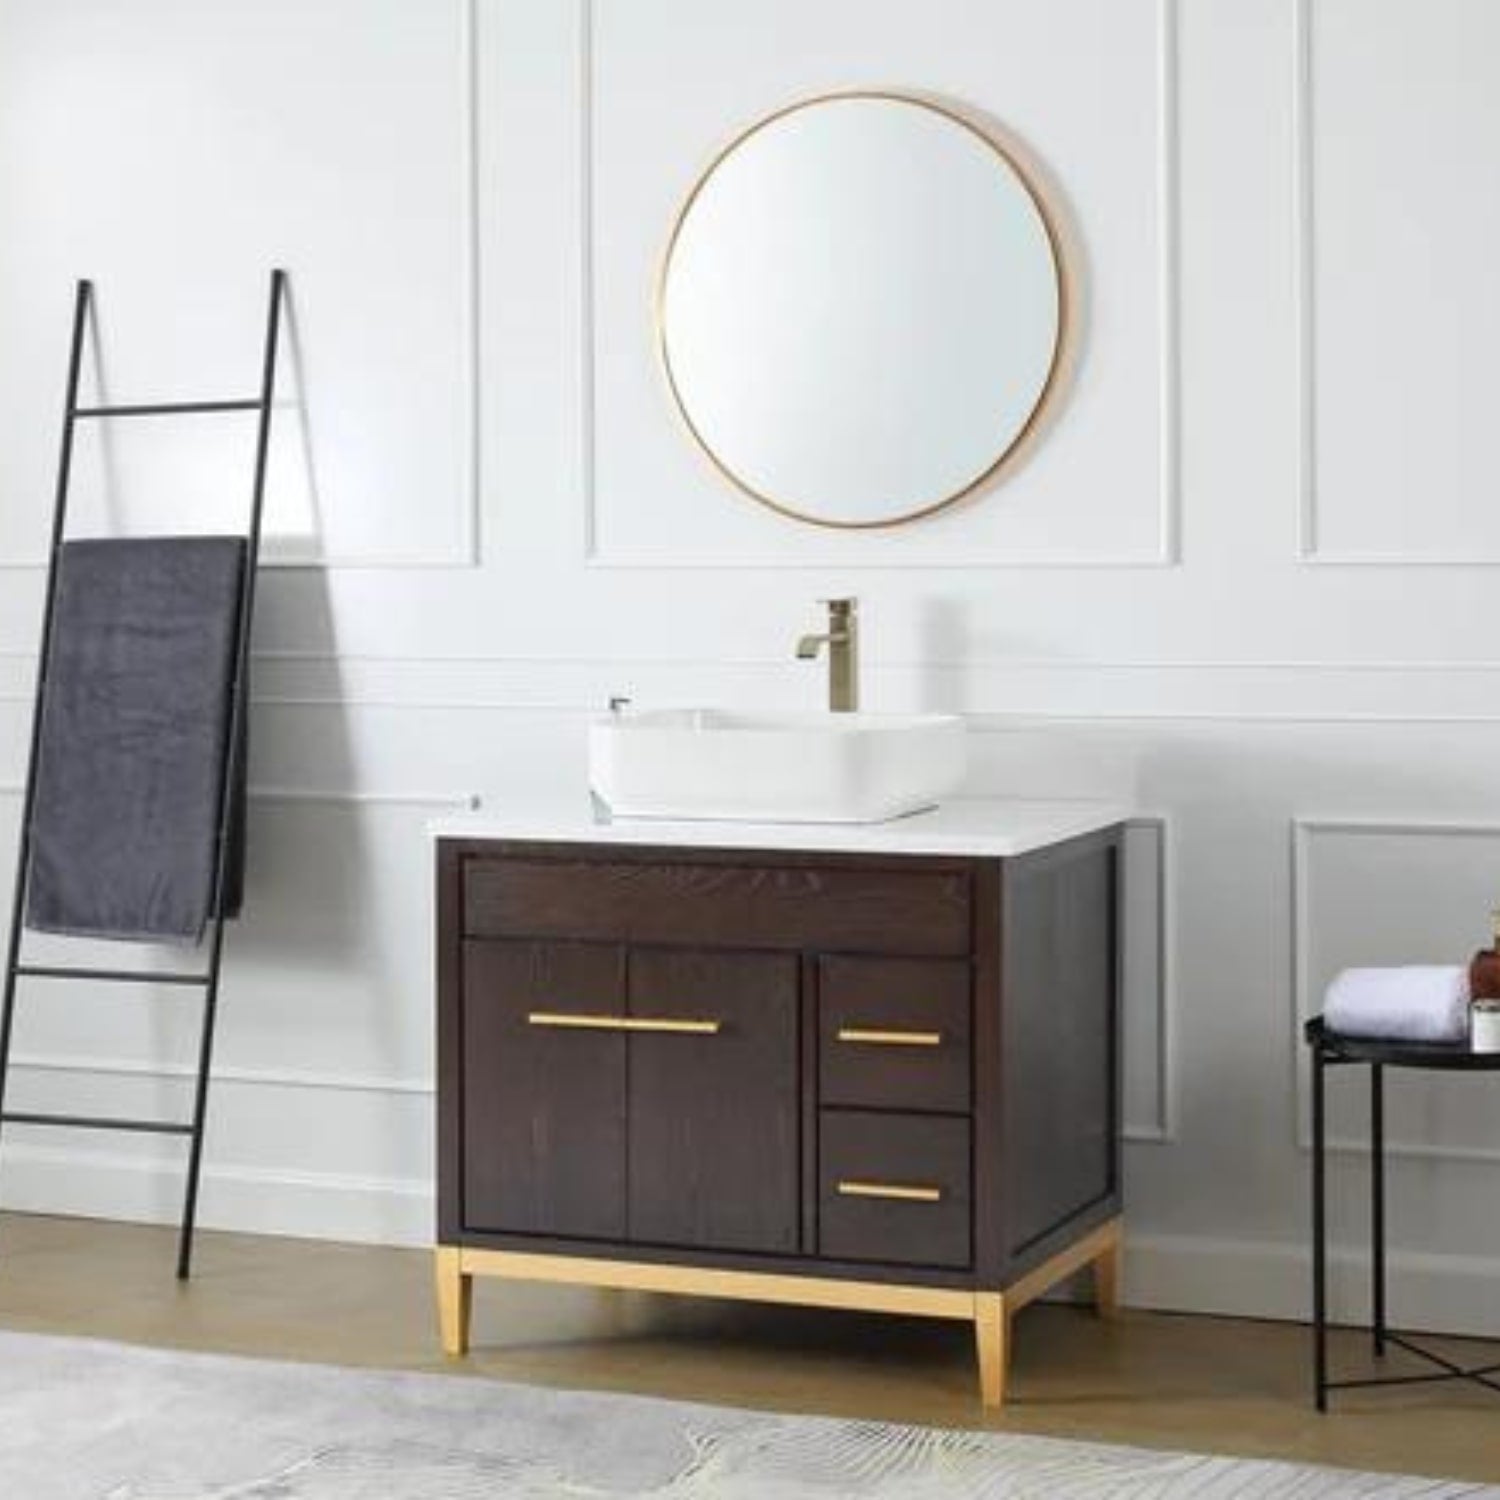 Beatrice 36" Vanity with White Quartz Top - Contemporary Bathroom Vanity